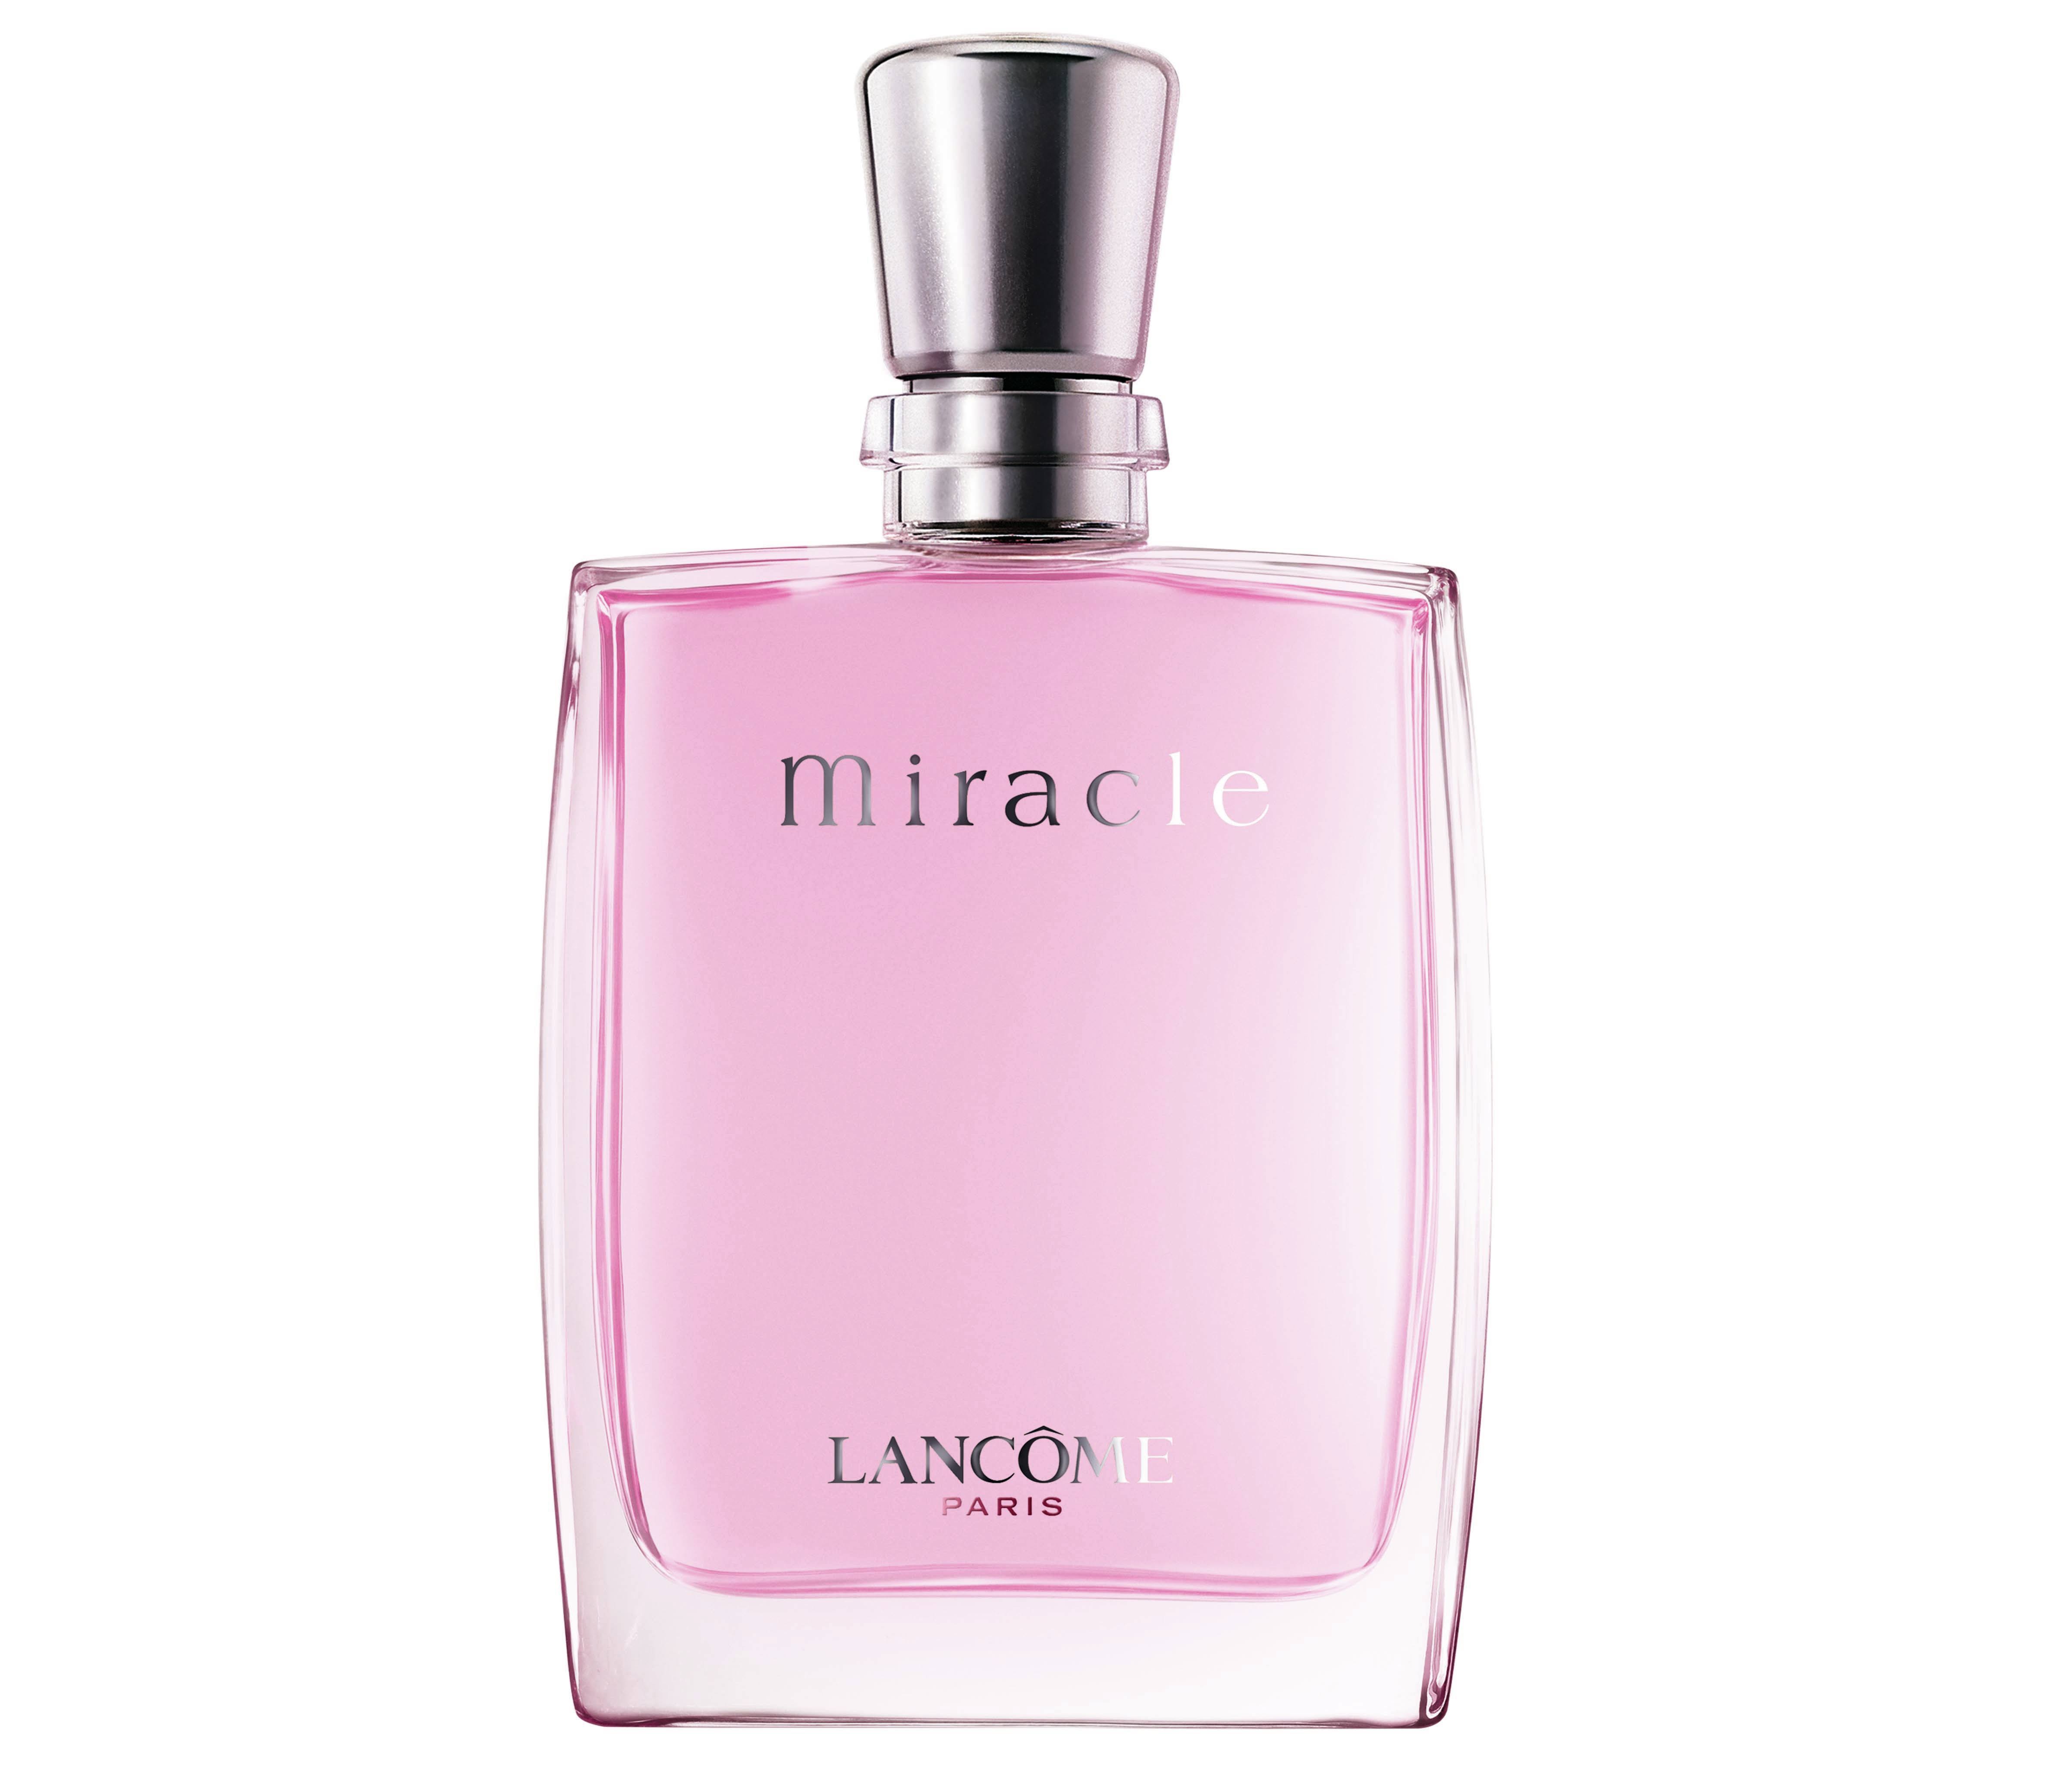 Lancome Miracle for Women Eau de Parfum Spray - 30ml